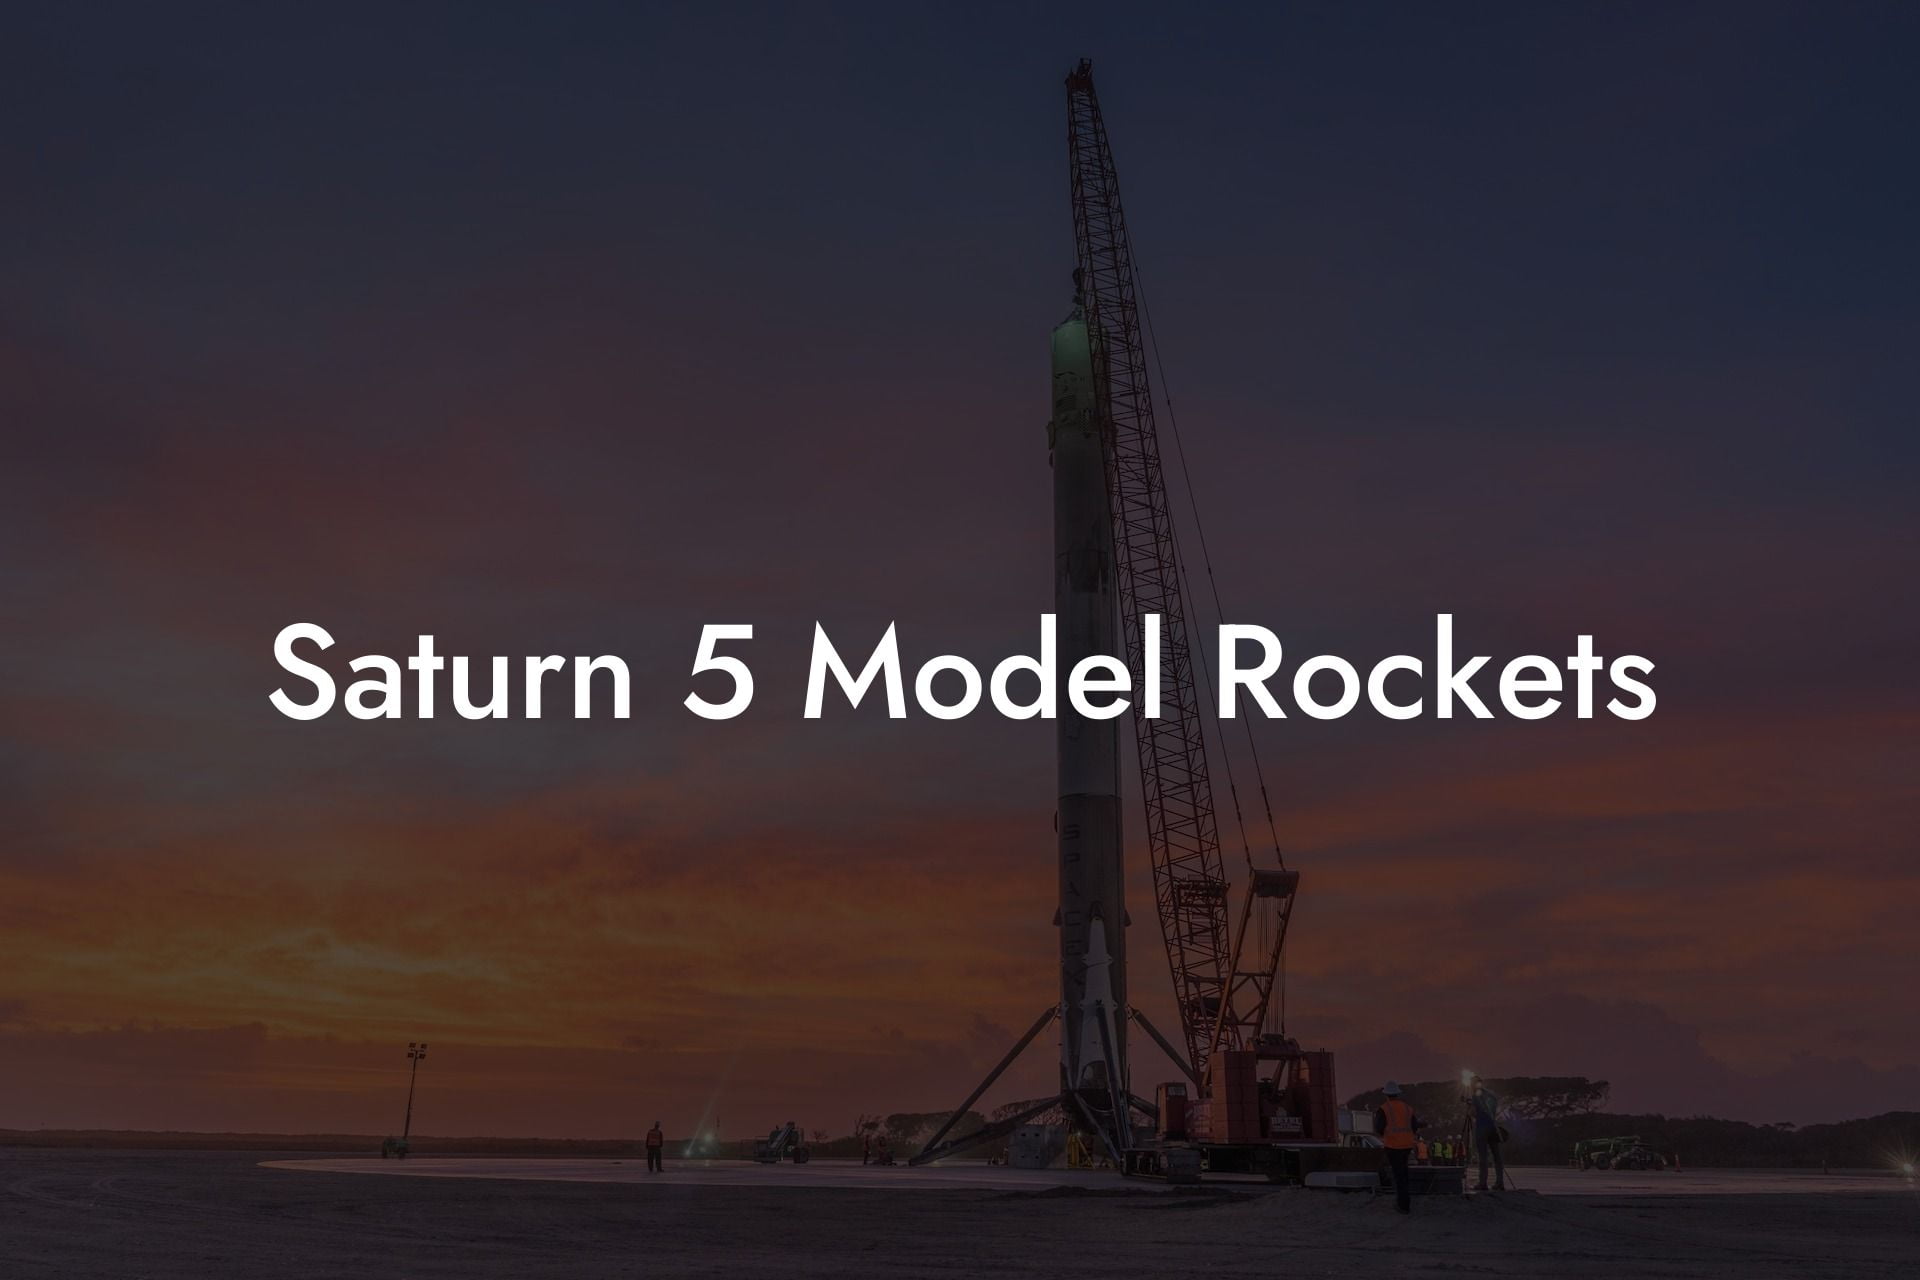 Saturn 5 Model Rockets